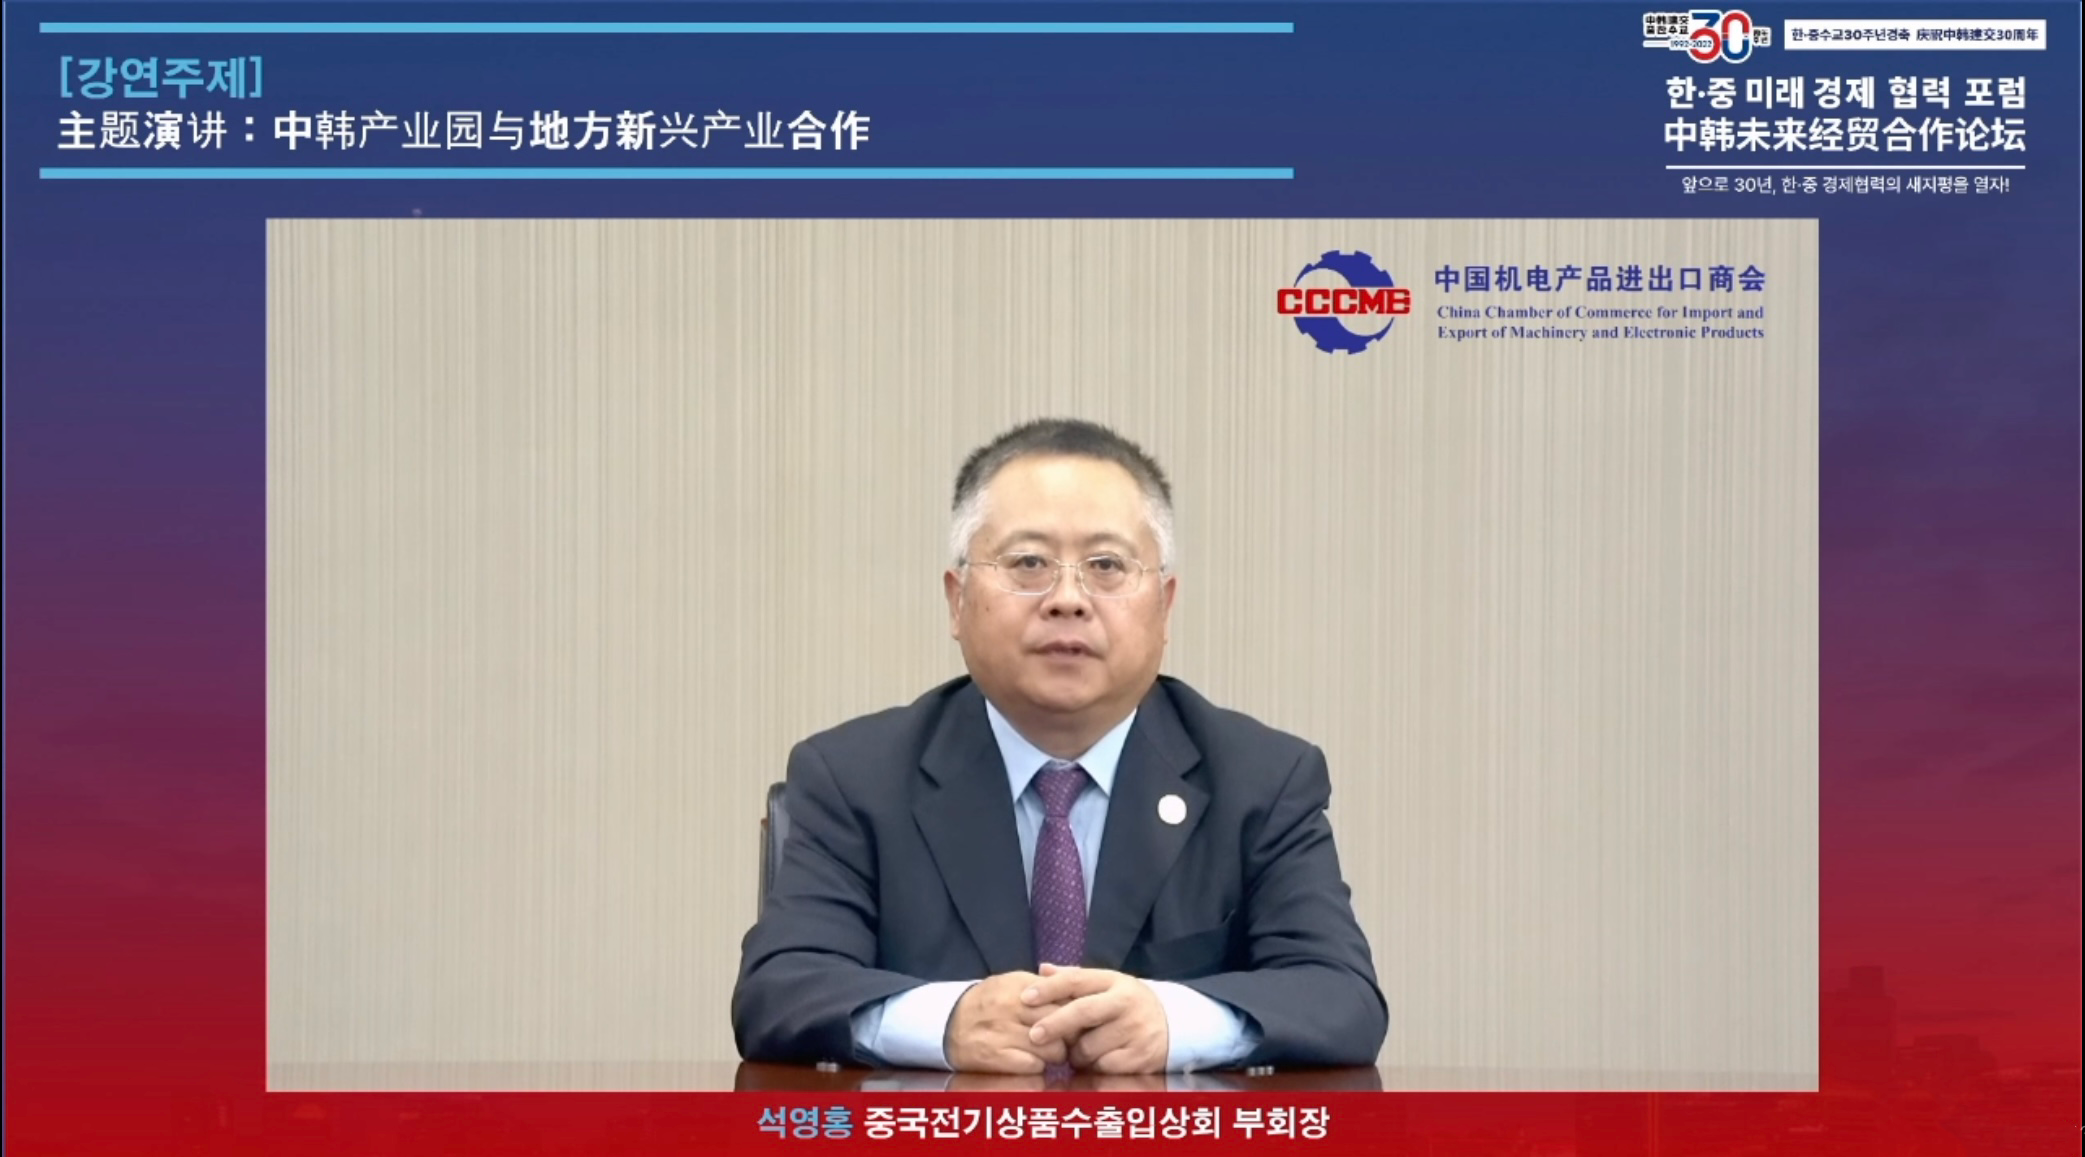 石永红副会长以视频方式参加庆祝中韩建交30周年未来经贸合作论坛